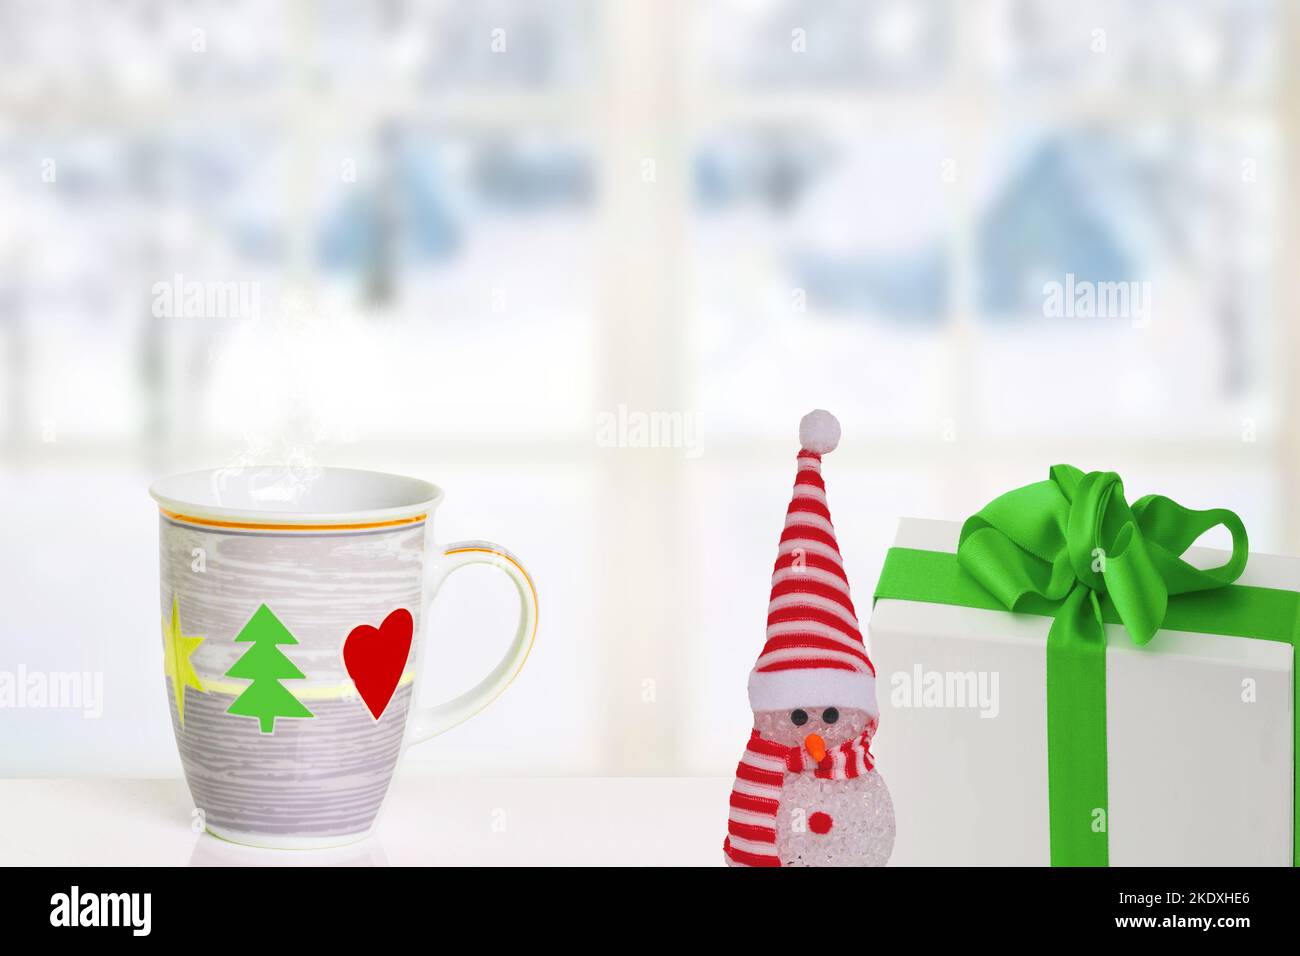 Frohe Weihnachten und Glückwünsche zum neuen Jahr. Ein Schneemann, ein Geschenkpaket und ein Weihnachtsbecher auf dem Tisch vor einer abstrakten Winterlandschaft. Sp Stockfoto